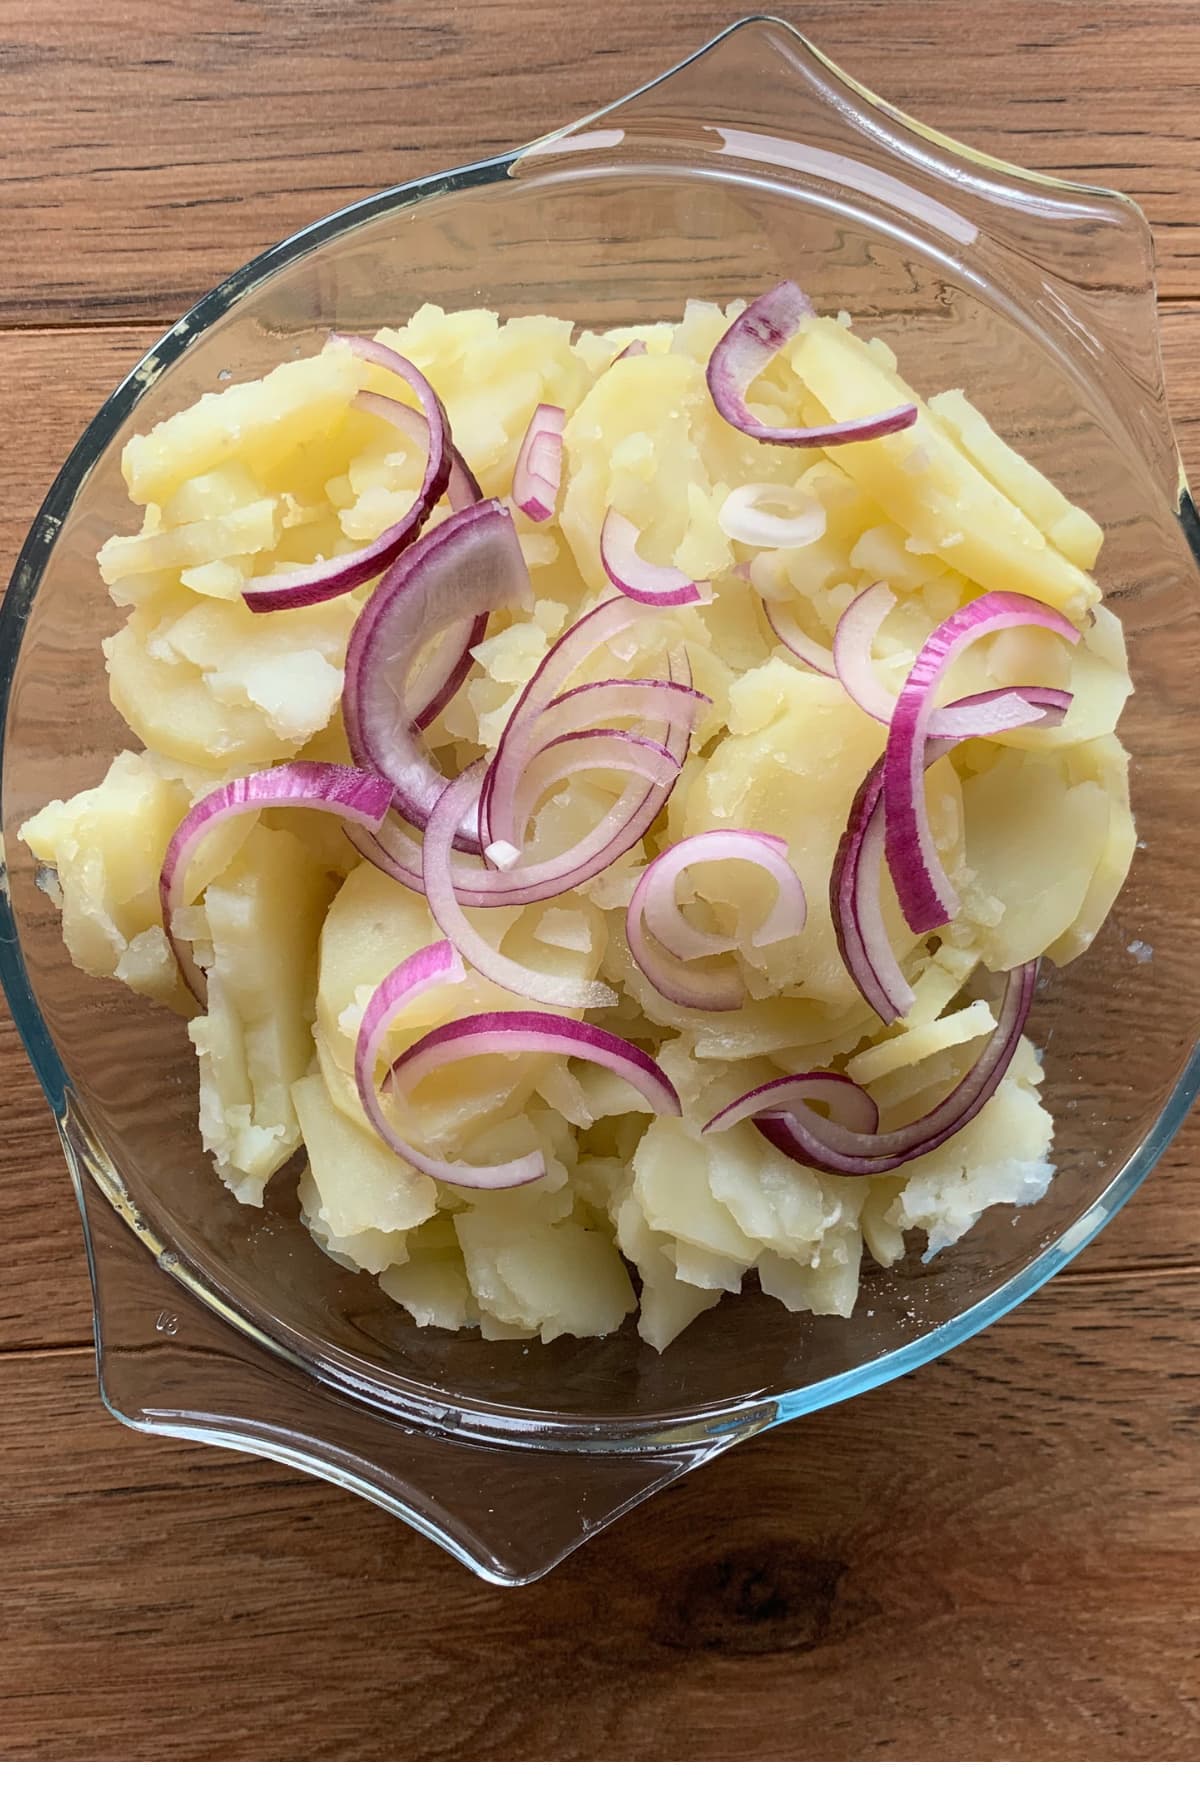 Layering potato dish